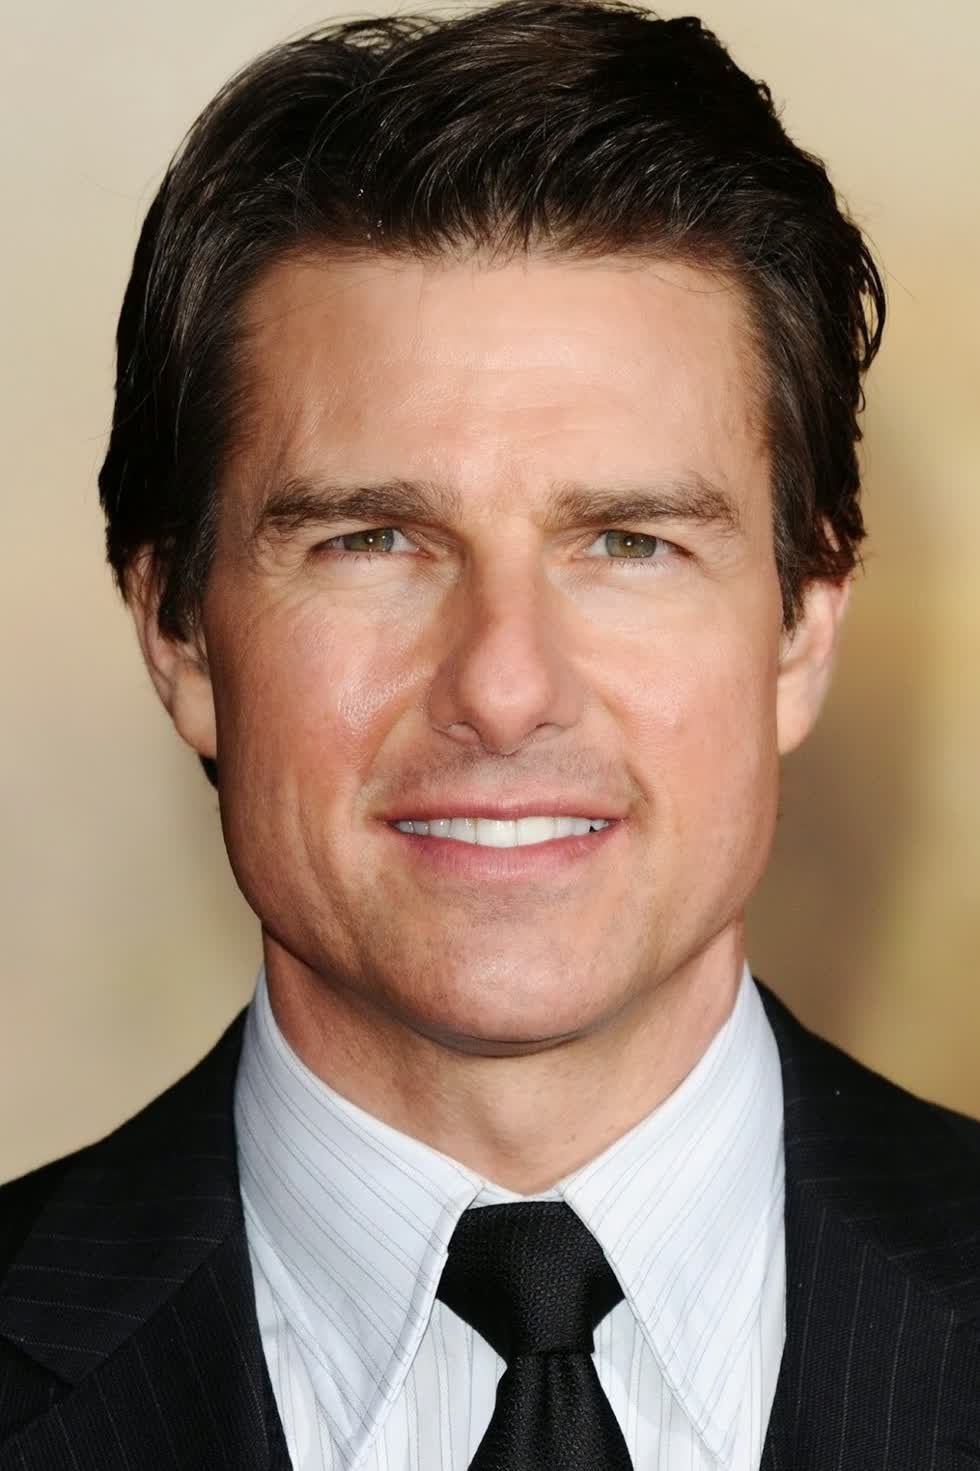 4. Tom Cruise, tuy không tham gia đóng phim nhiều nhưng nam diễn viên vẫn được ưu ái với mức cát-sê hậu hĩnh cho mỗi tác phẩm, giúp anh có tổng thu nhập 290 triệu USD (khoảng 6,5 nghin tỷ đồng).